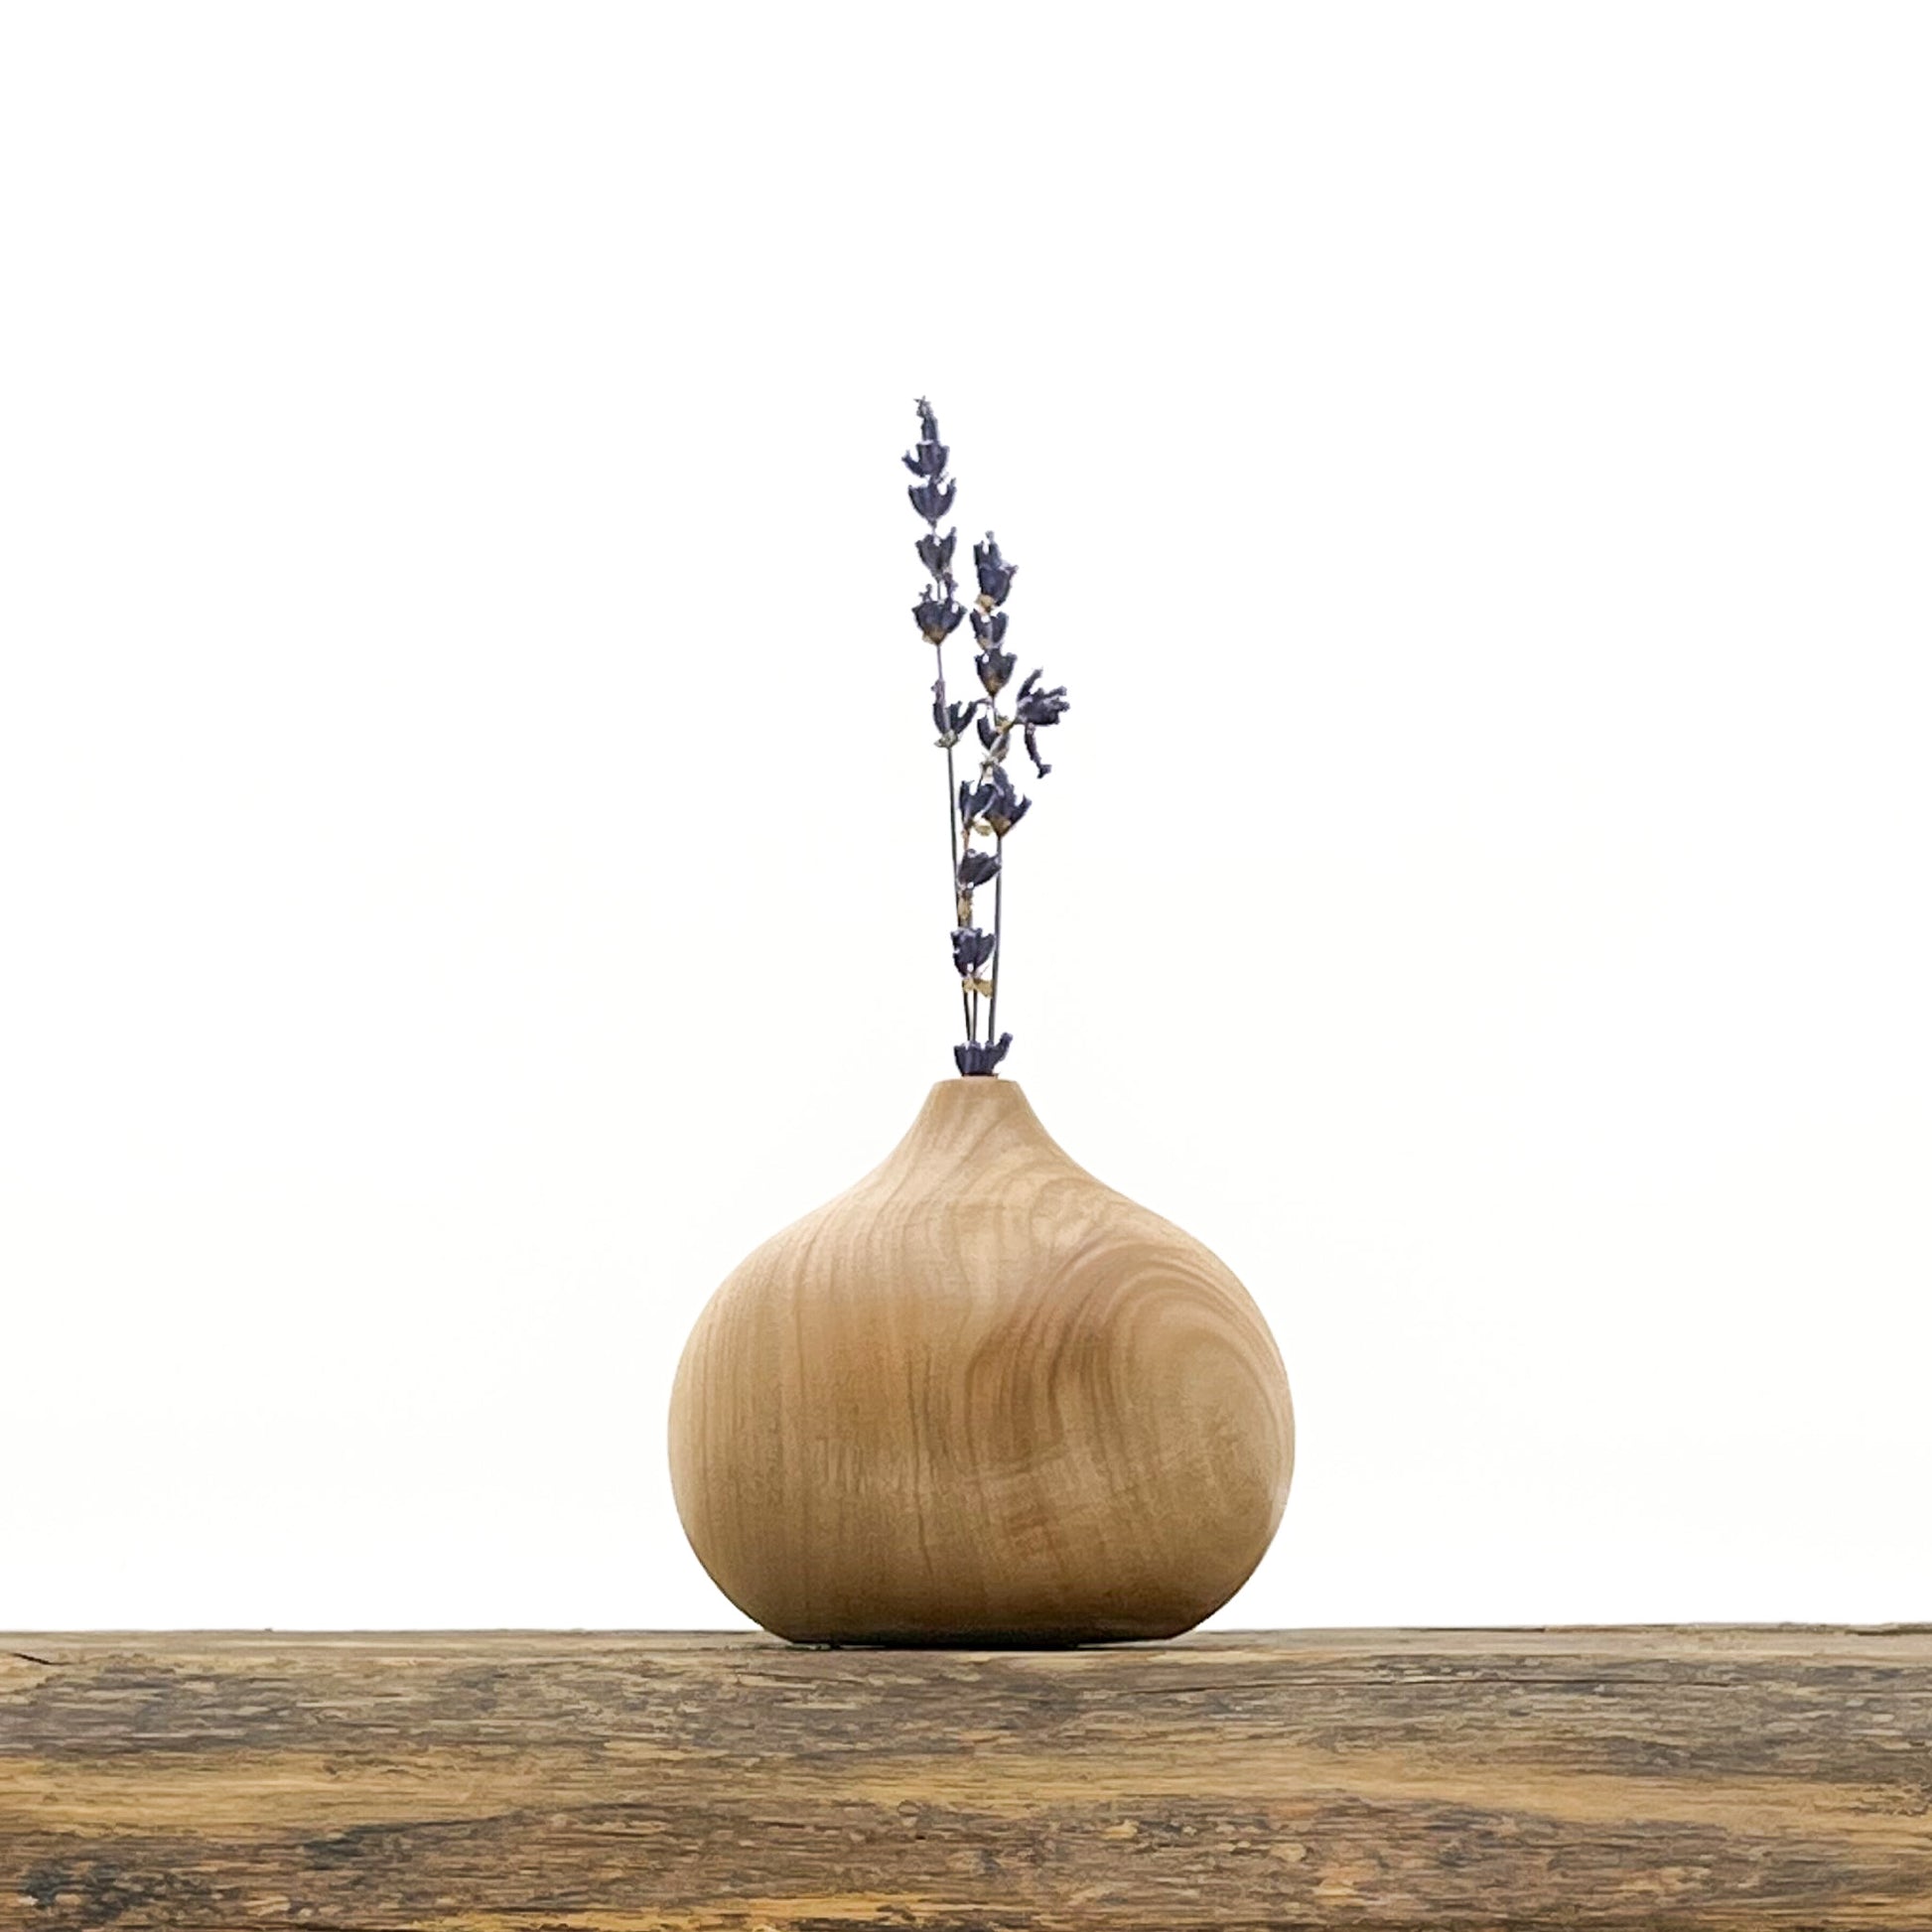 Ensemble de 3 vases au design épuré en bois fait main à partir de bois ramassé en forêt. Livrés avec fleurs séchées offertes.